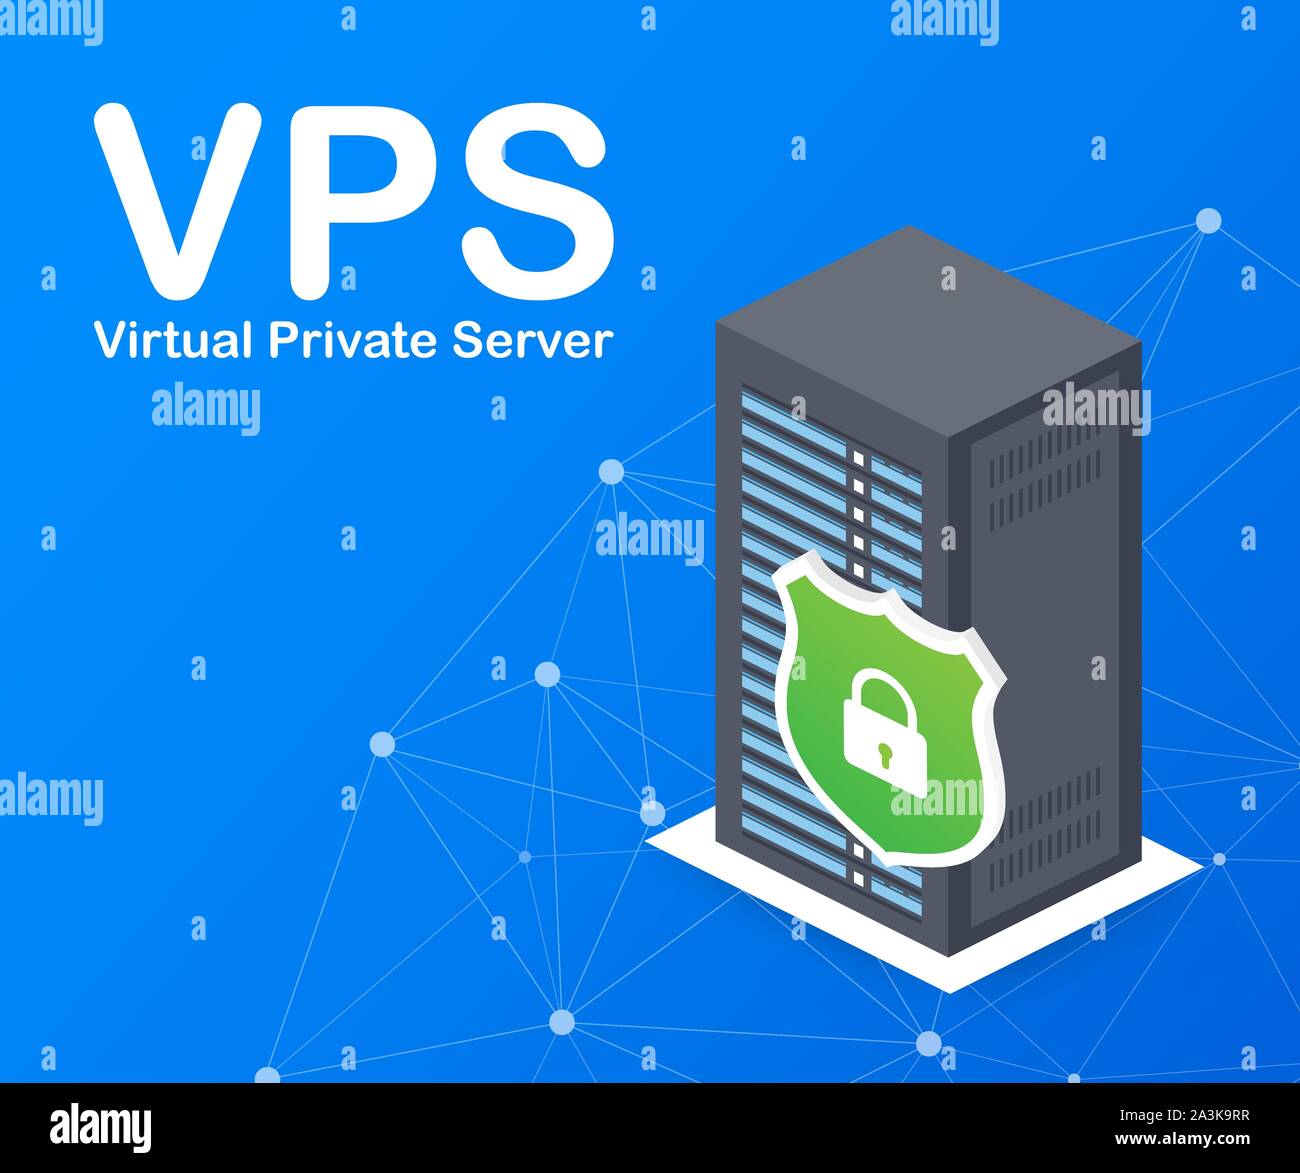 Serveur Privé Virtuel VPS hébergement web la technologie d'infrastructure  de services. Stock Vector illustration Image Vectorielle Stock - Alamy